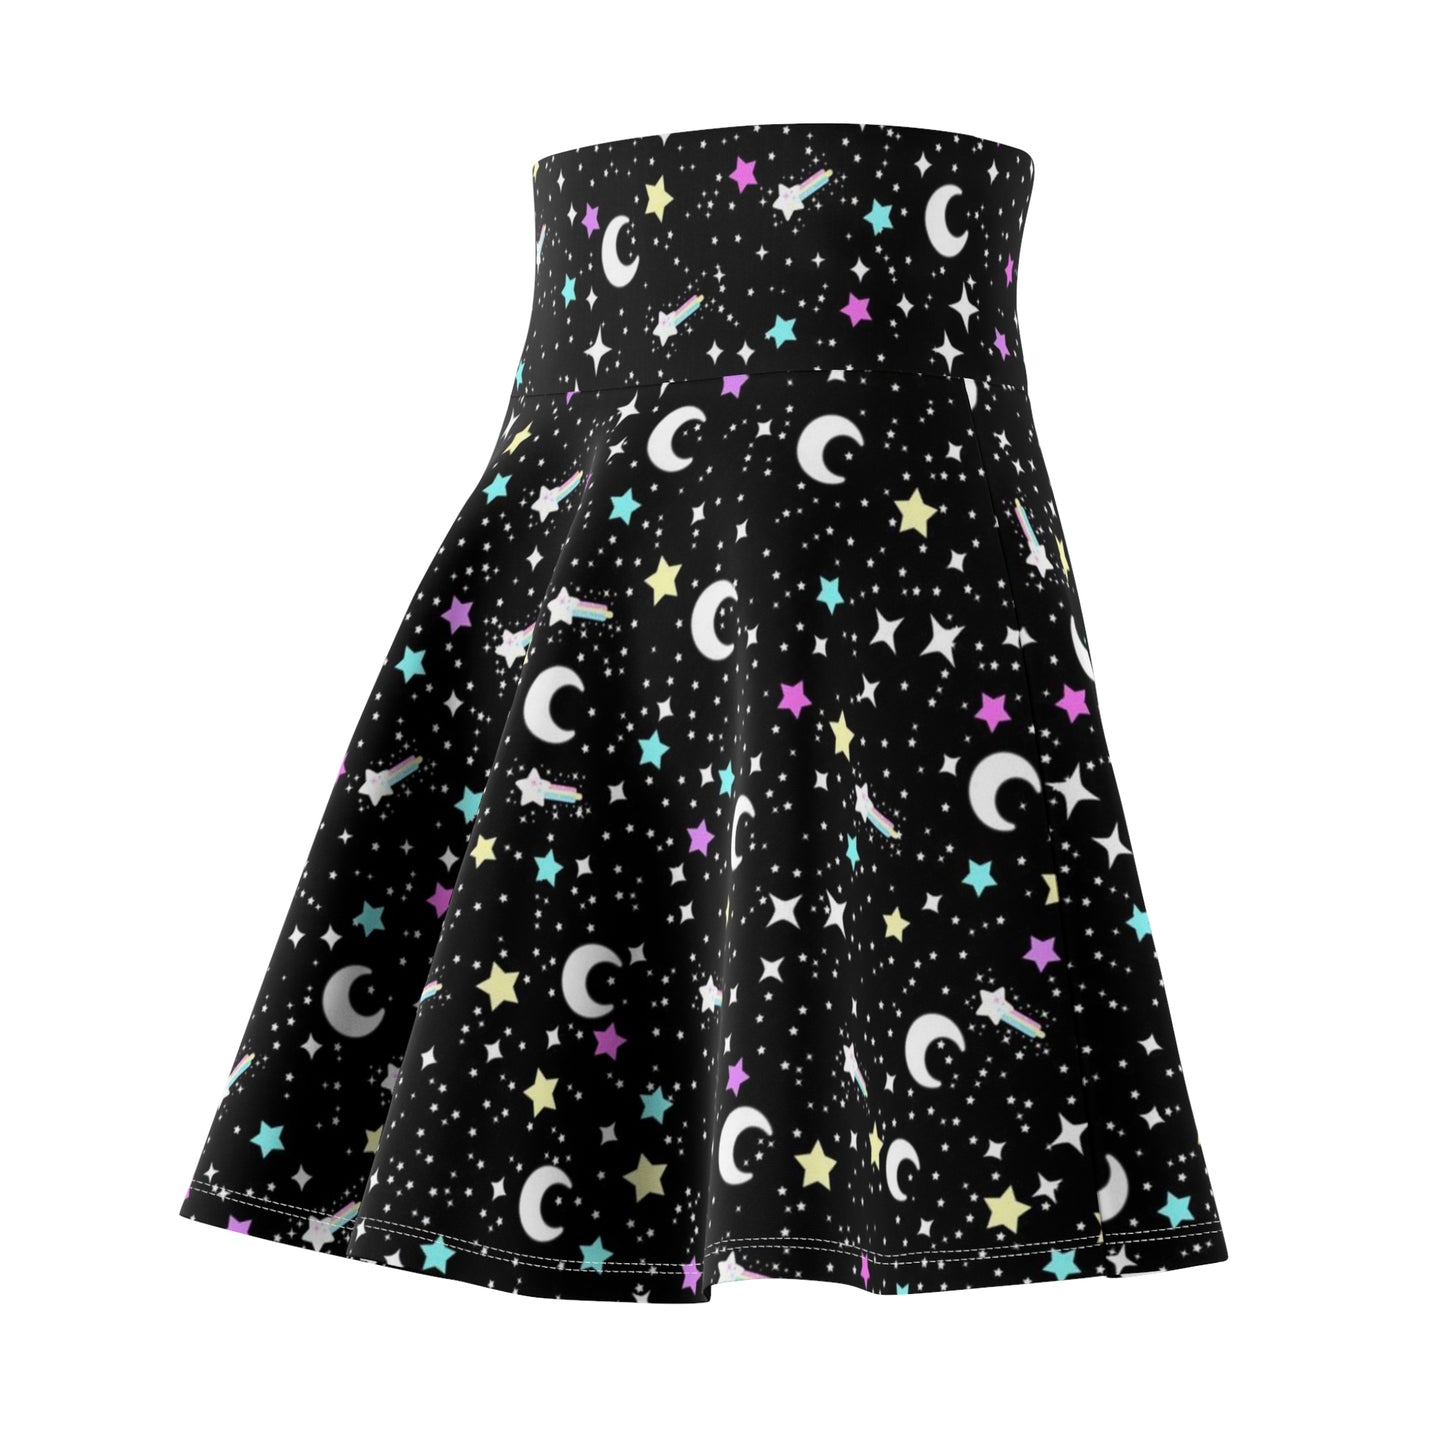 Starry Glitter Black High Waist Skater Skirt